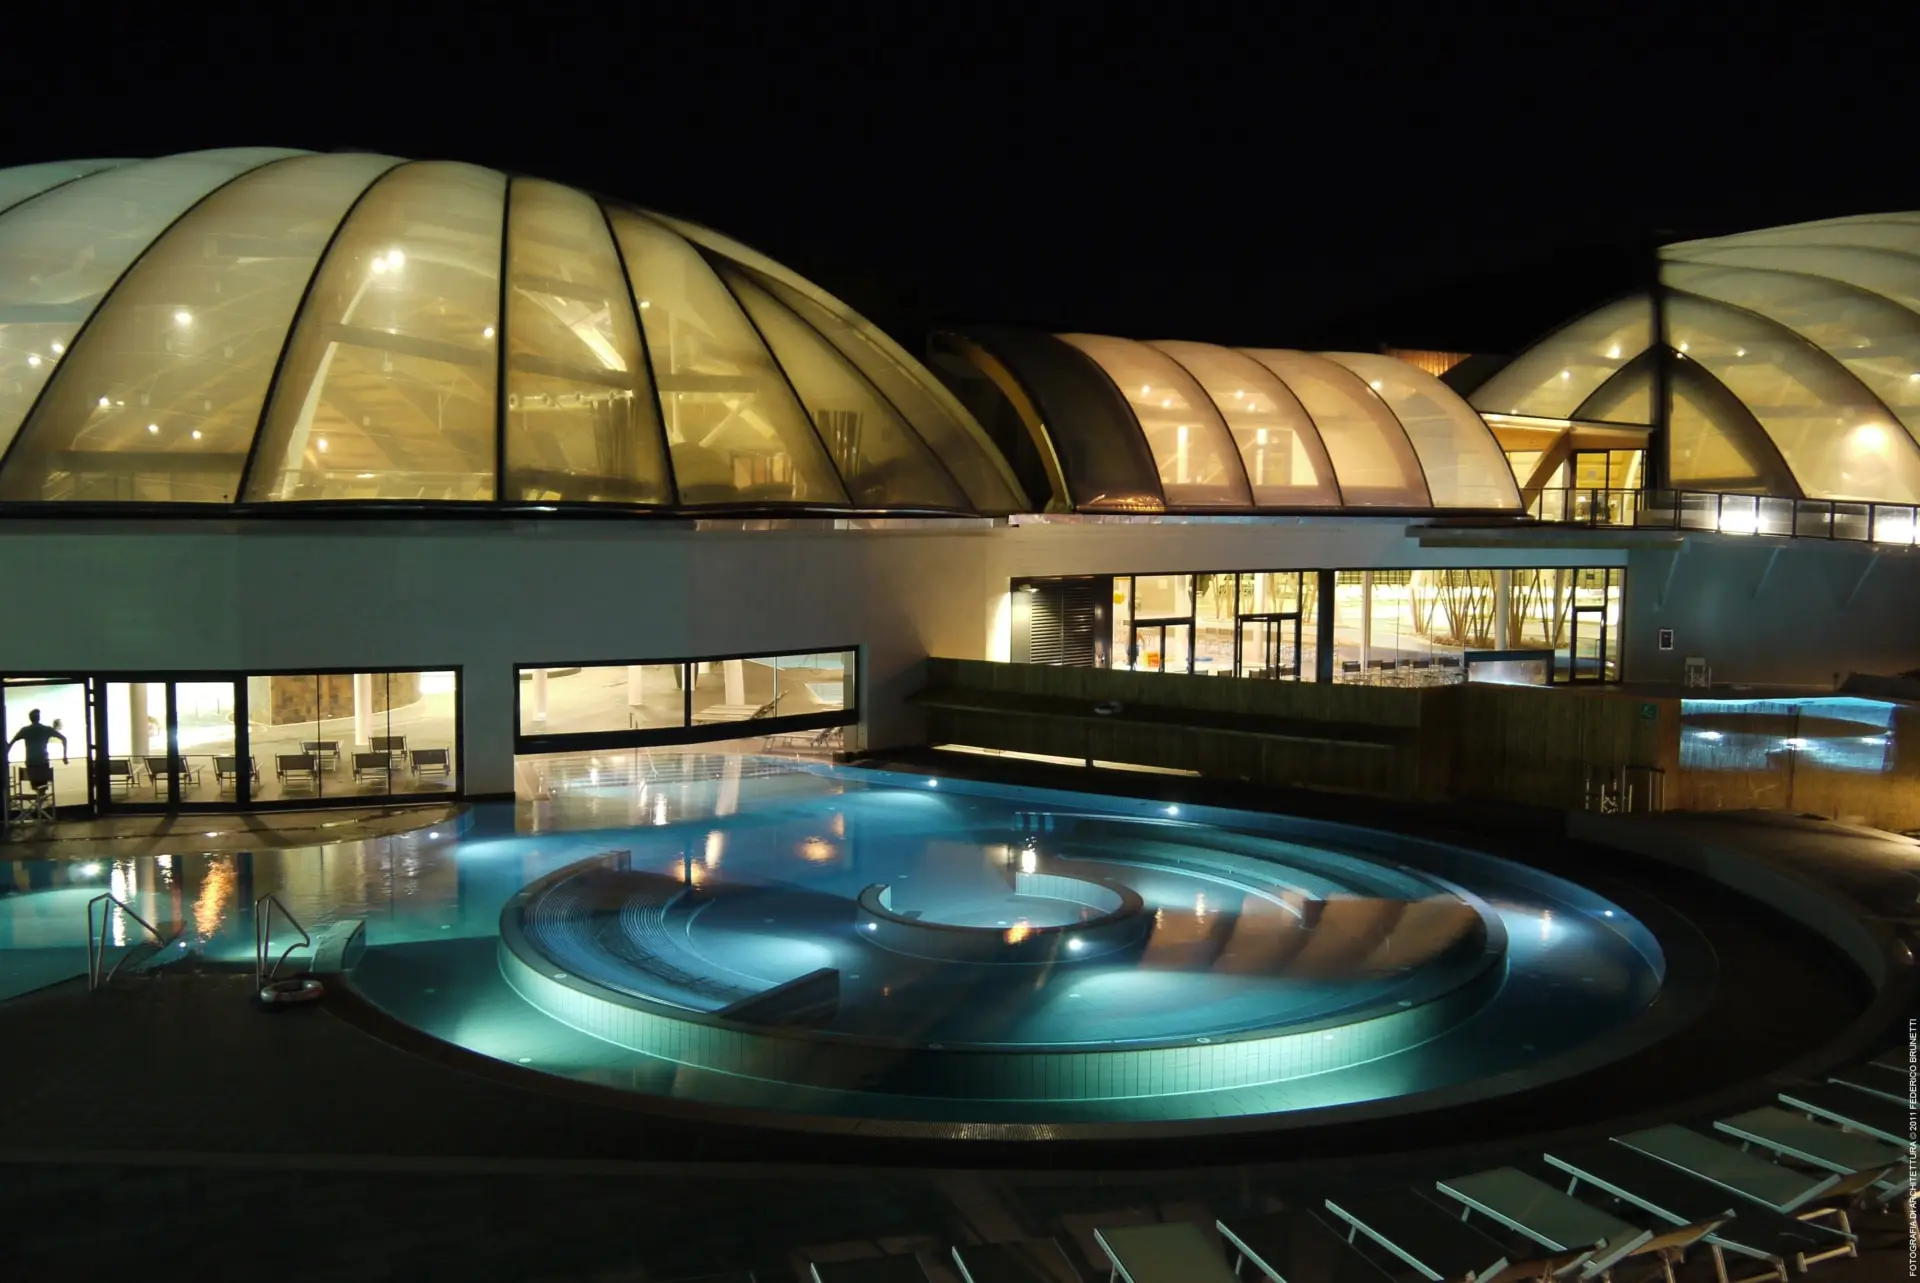 Die Zufriedenheit der Besucher und Mitarbeiter im Aquapark di Concorezzo wurde durch ein Texlon® ETFE-Dach mit Lichtdurchlässigkeit erhöht.